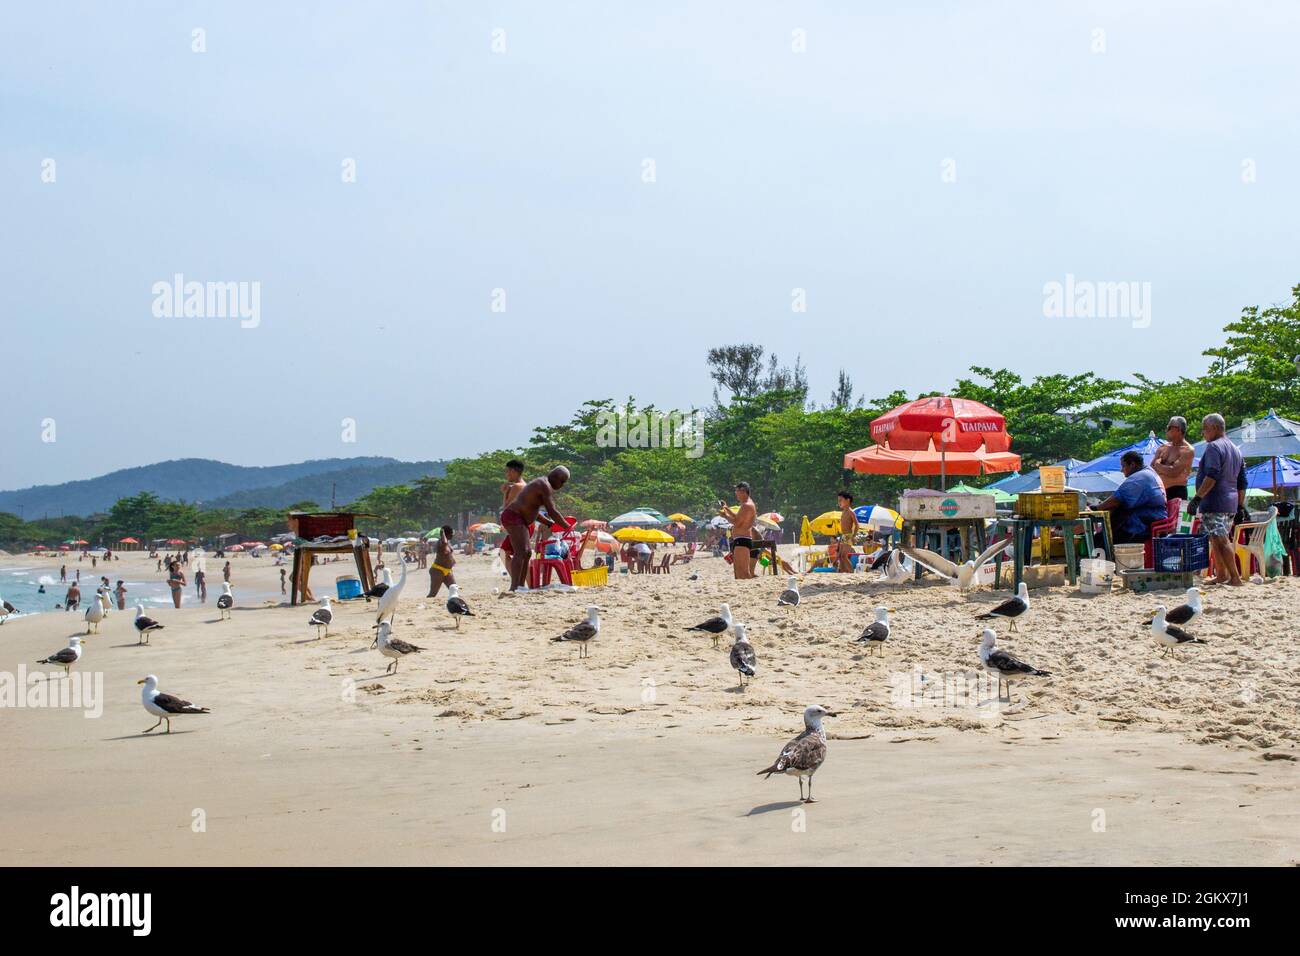 Gruppe von Möwen im Sand am Strand von Itaipu, Rio de Janeiro, Brasilien. Im Hintergrund sind beiläufige Personen zu sehen. Der berühmte Ort ist ein großer touri Stockfoto